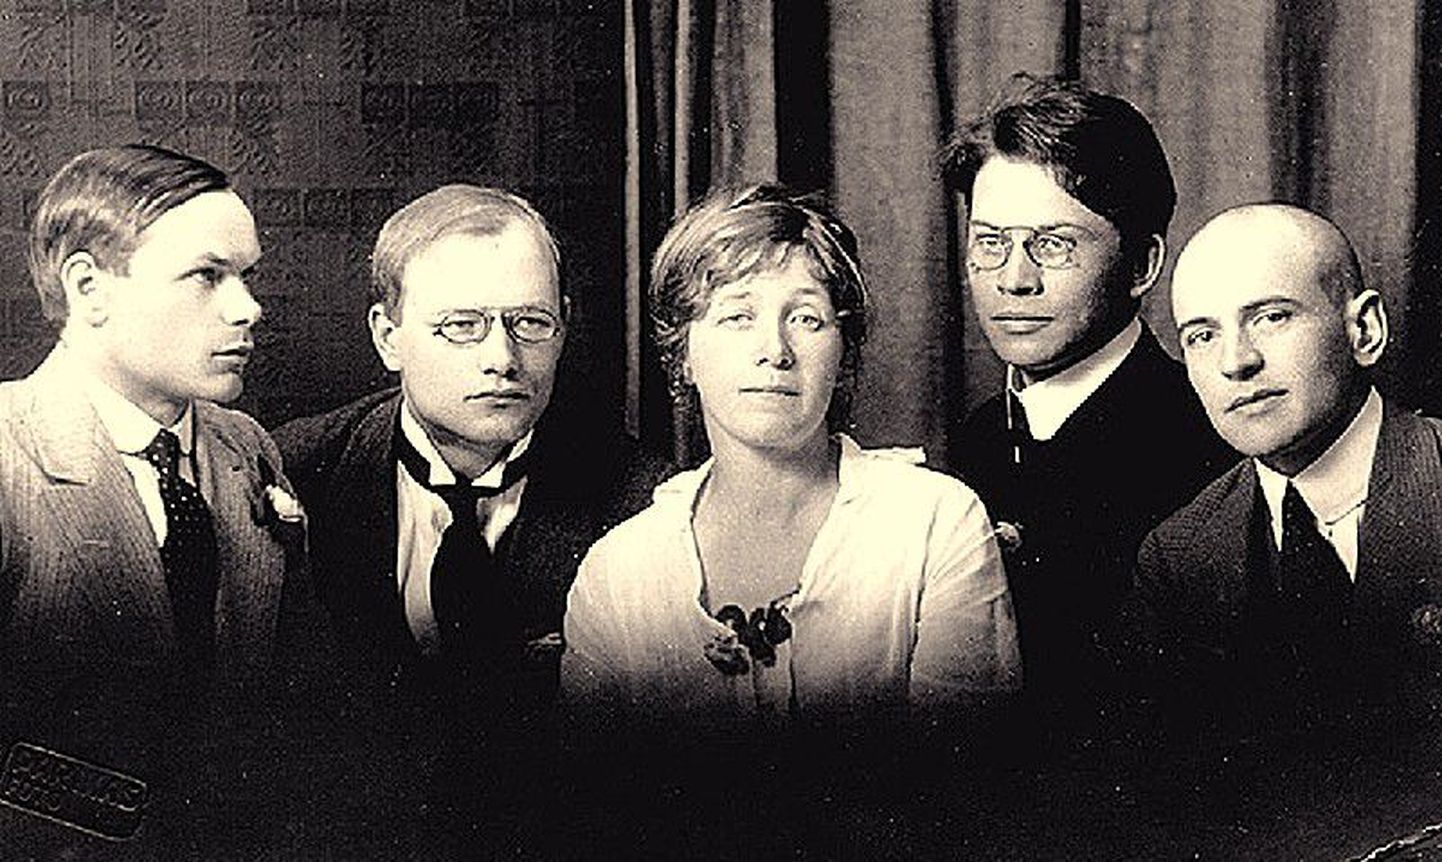 Siurulasi aastal 1917 (vasakult): Henrik Visnapuu, August Gailit, Marie Under, Friedebert Tuglas, Artur Adson.